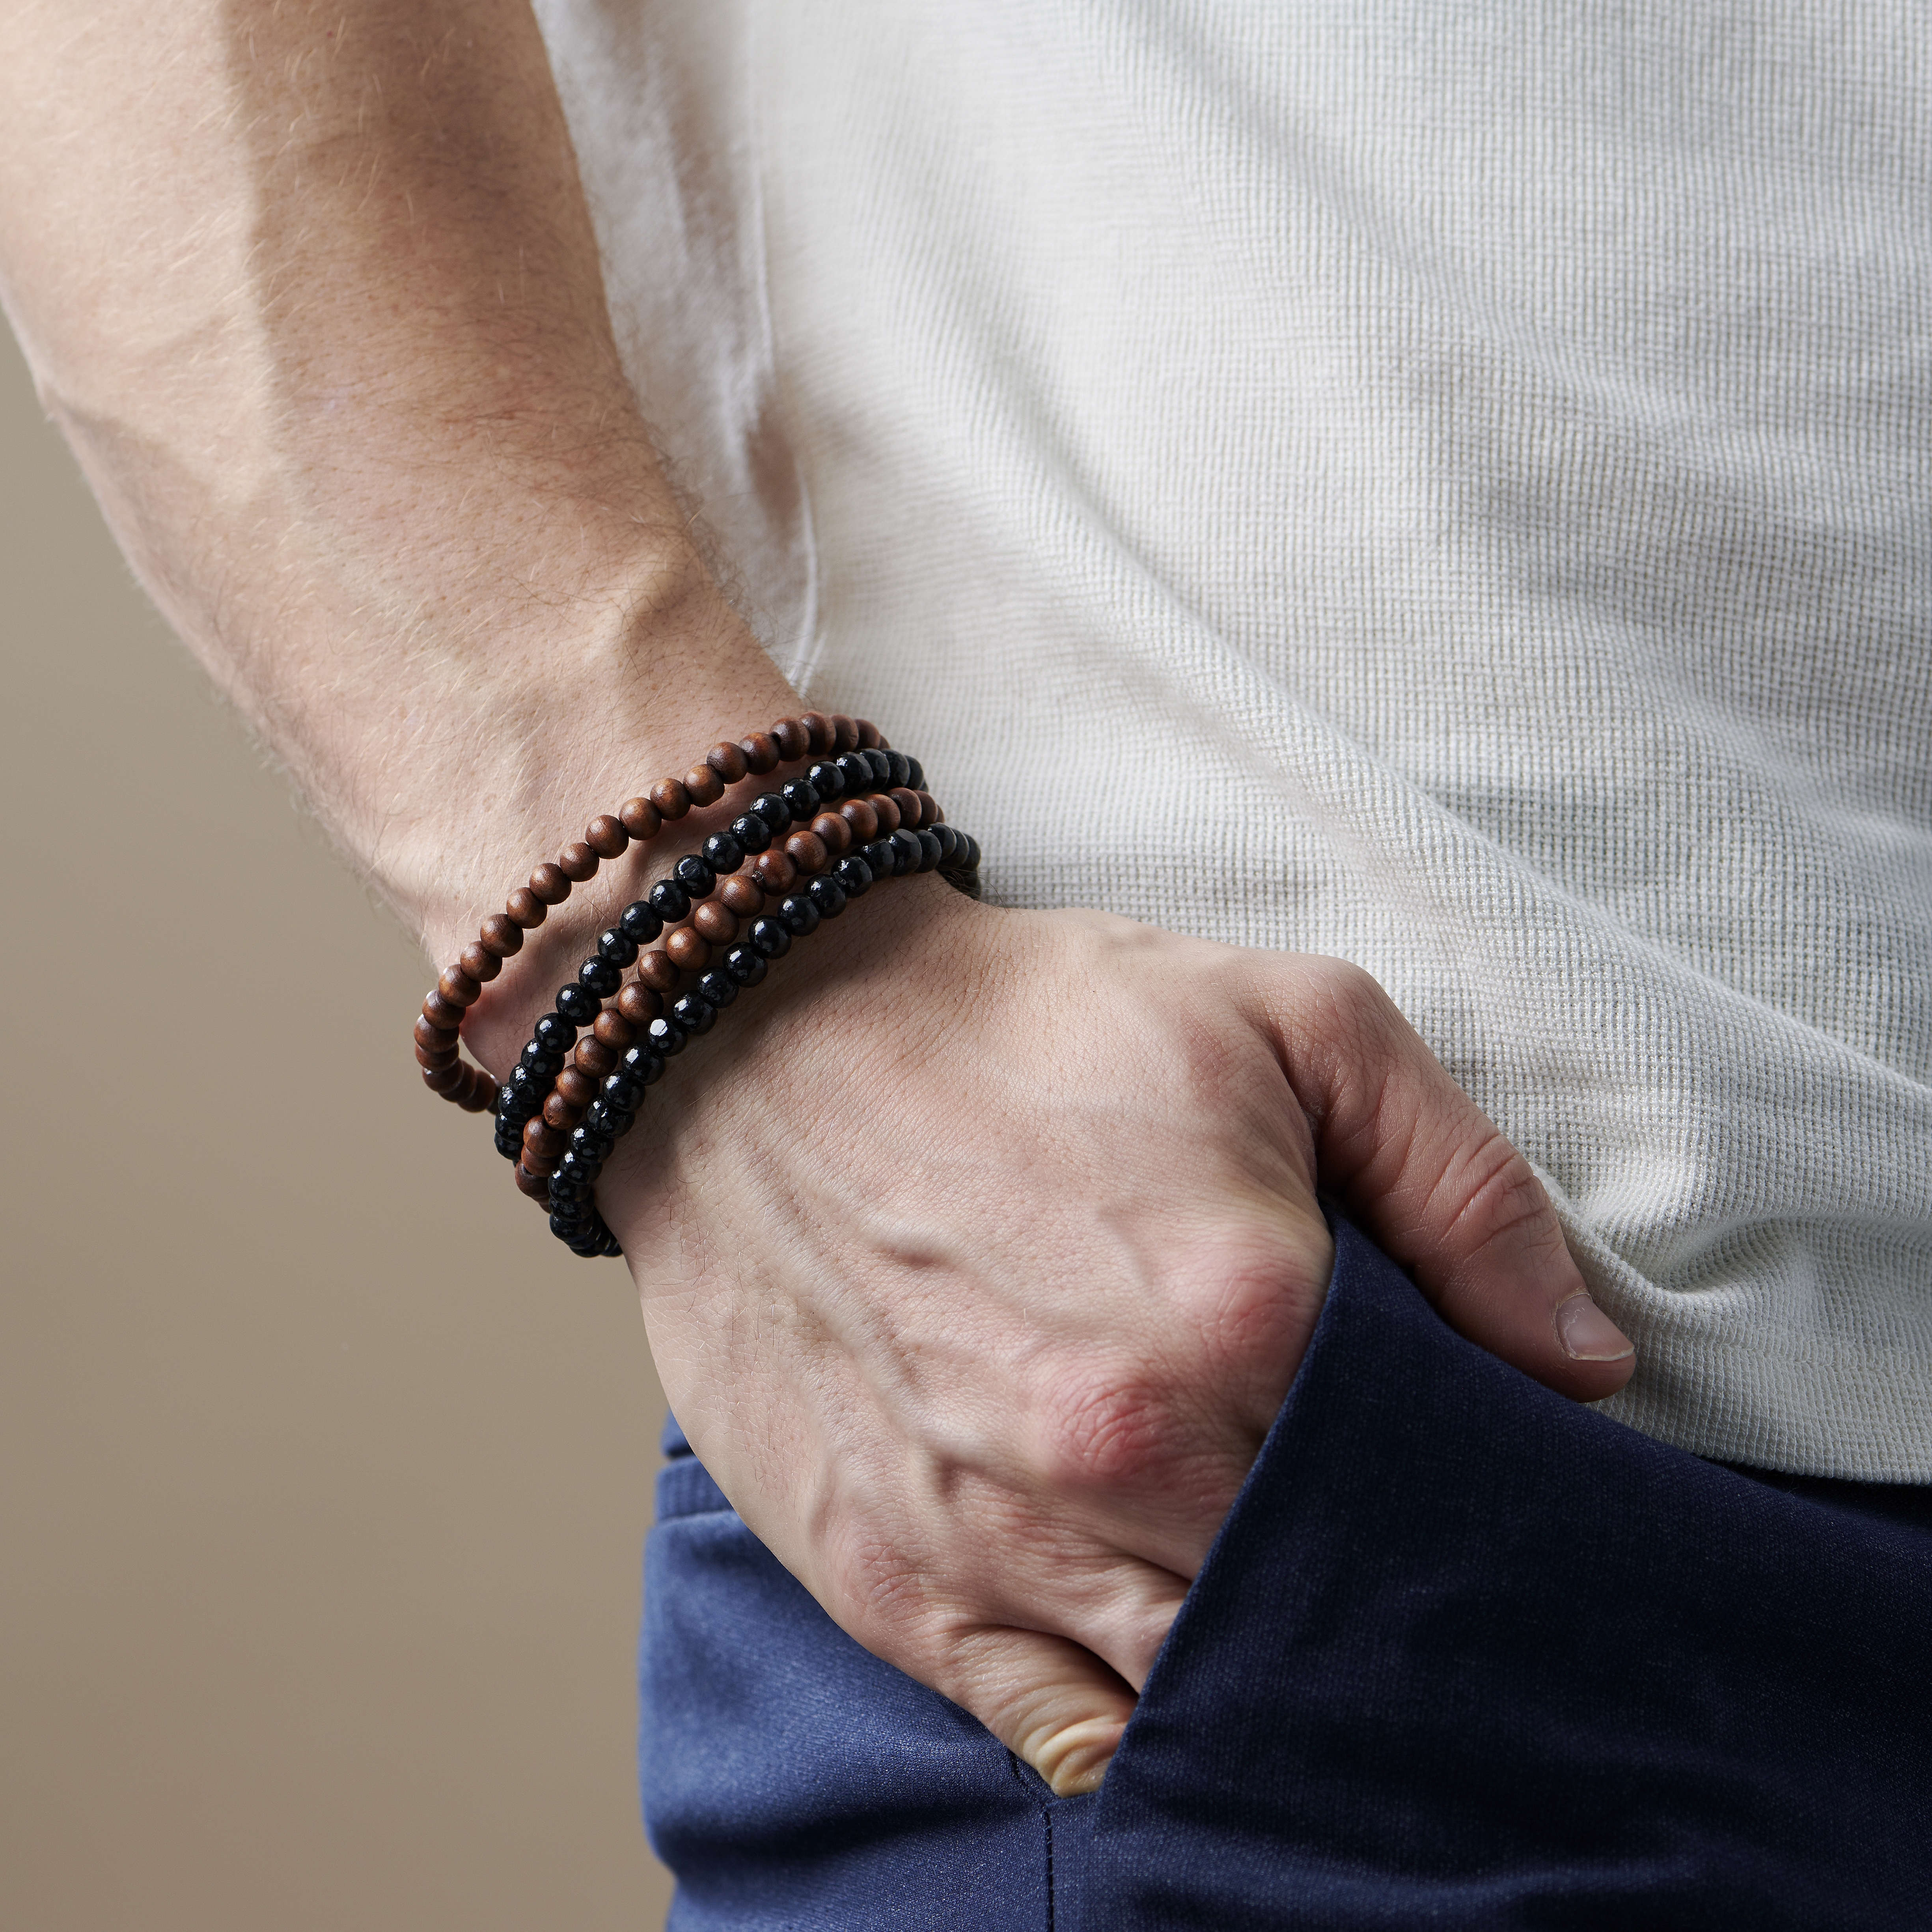 10,180 Leather Bracelet Men Images, Stock Photos & Vectors | Shutterstock